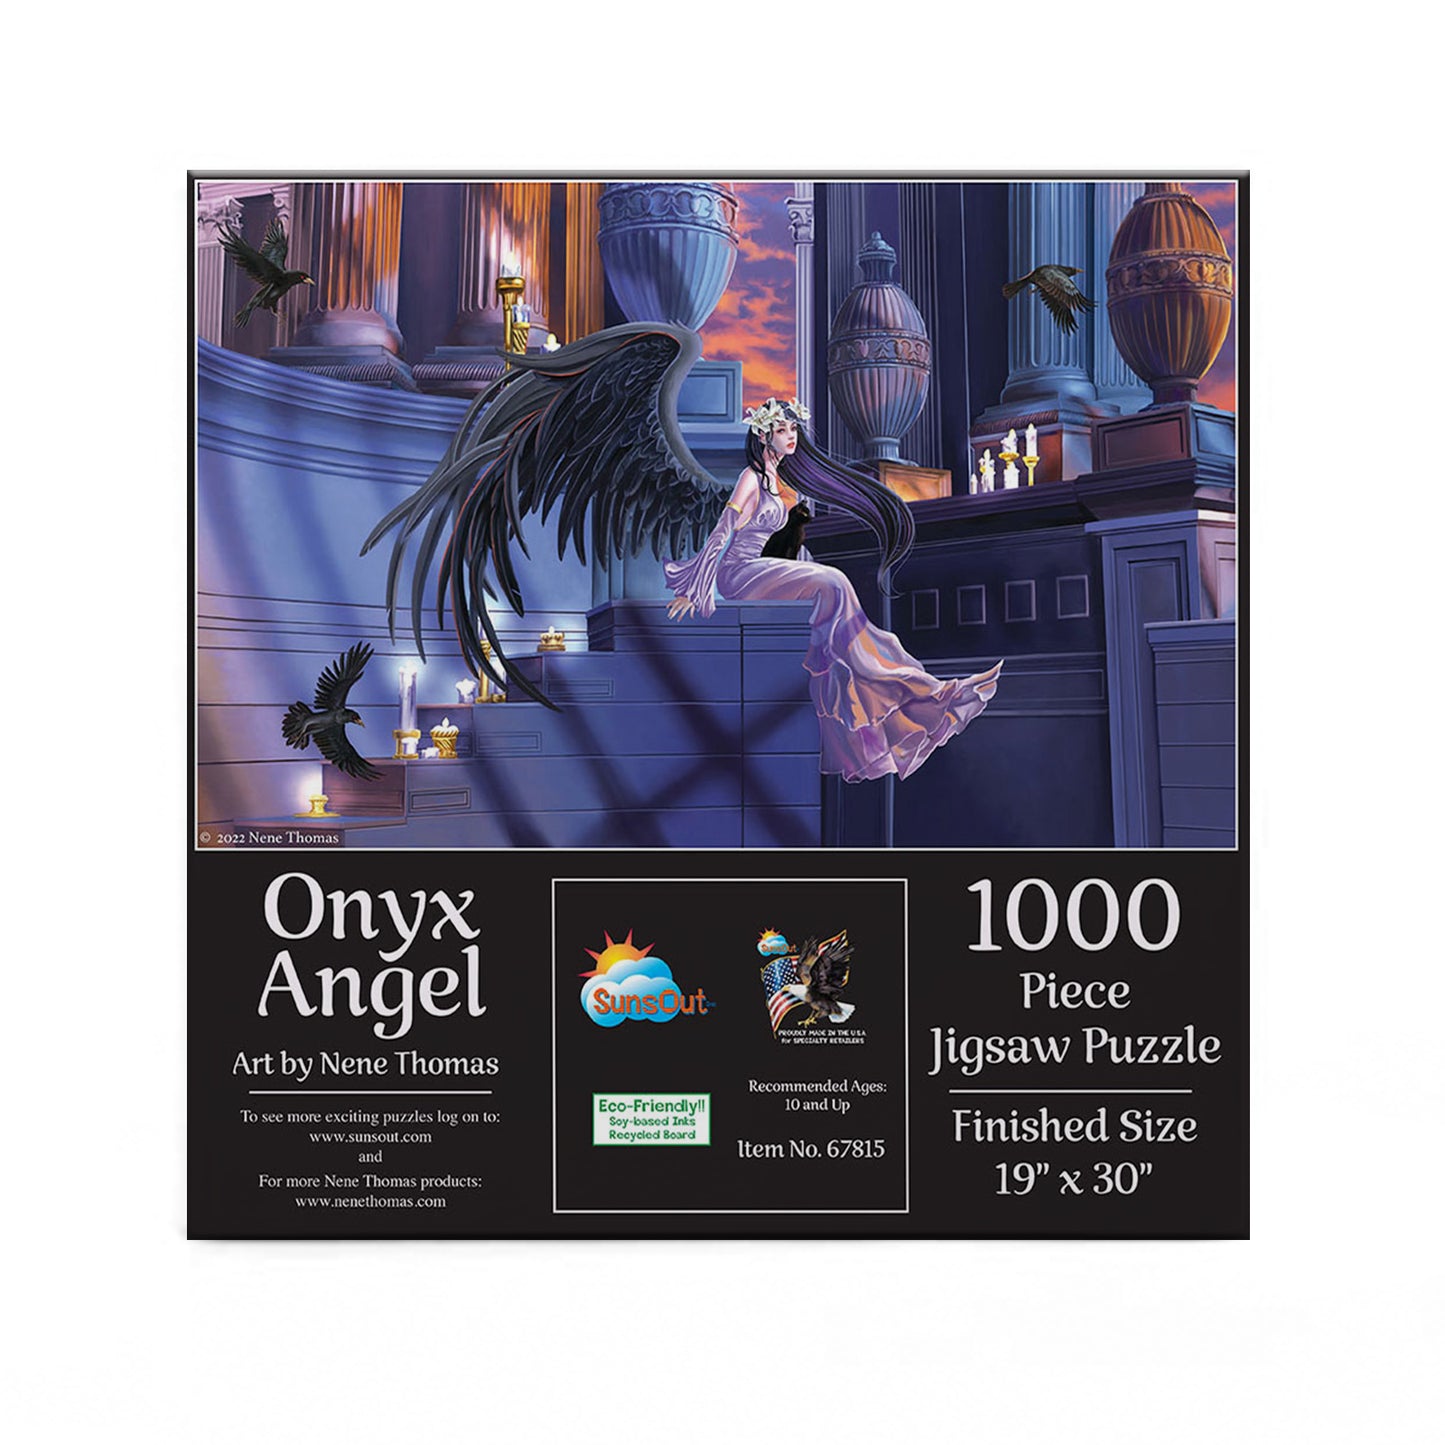 Onyx Angel by Nene Thomas, 1000 Piece Puzzle